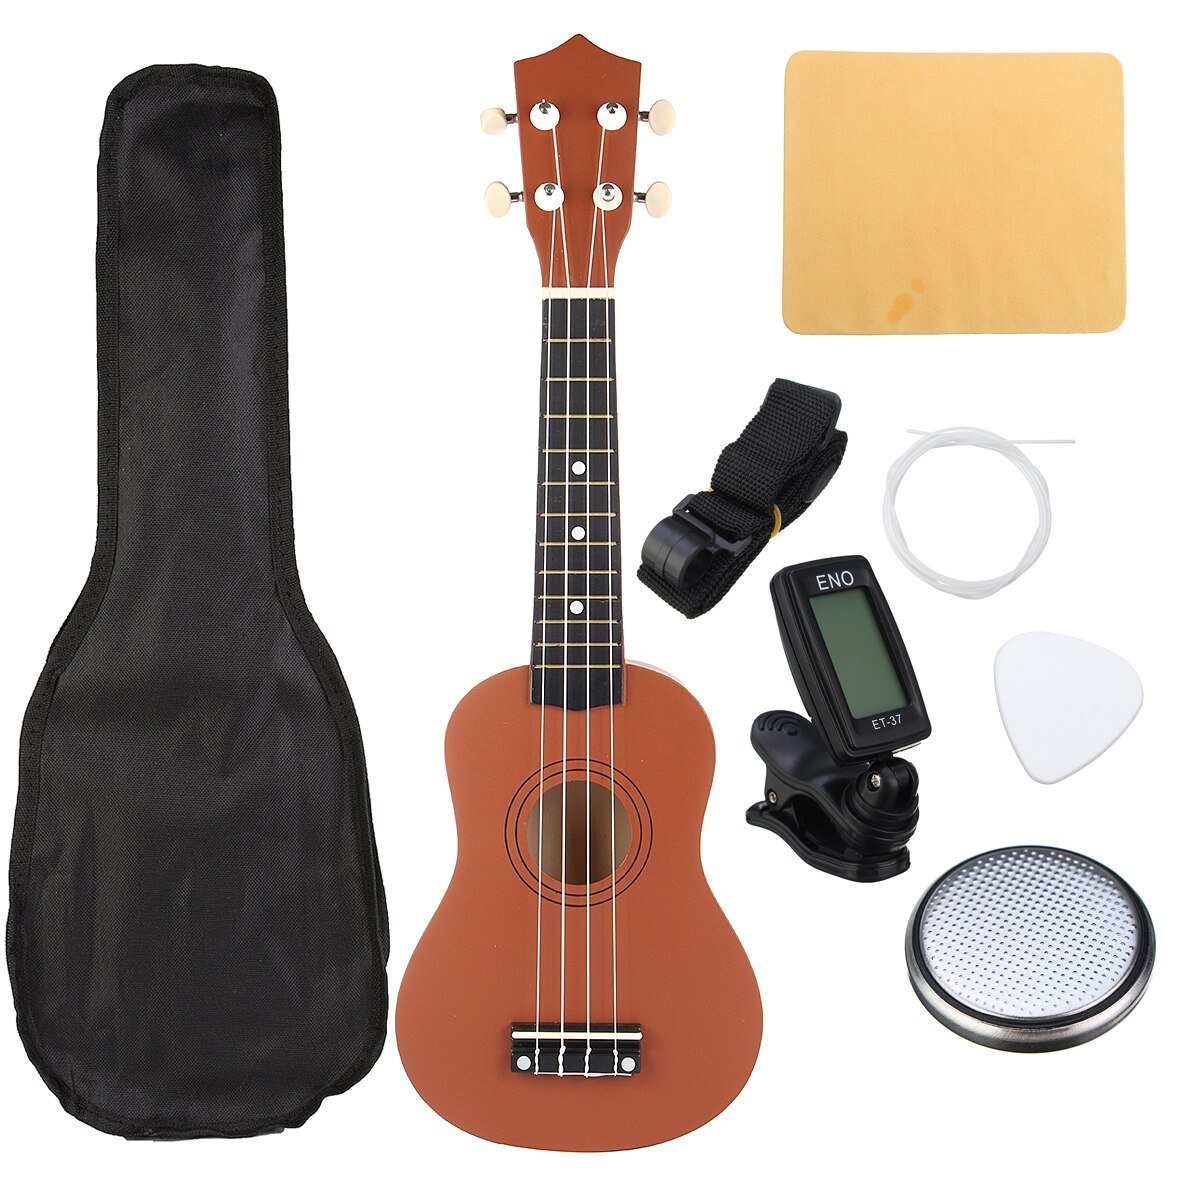 Ukulele Combo 21 Ukulele Black Soprano 4 Strings Uke Hawaii Bass Stringed Musical Instrument Set Kits+Tuner+String+Strap+Bag - AKLOT